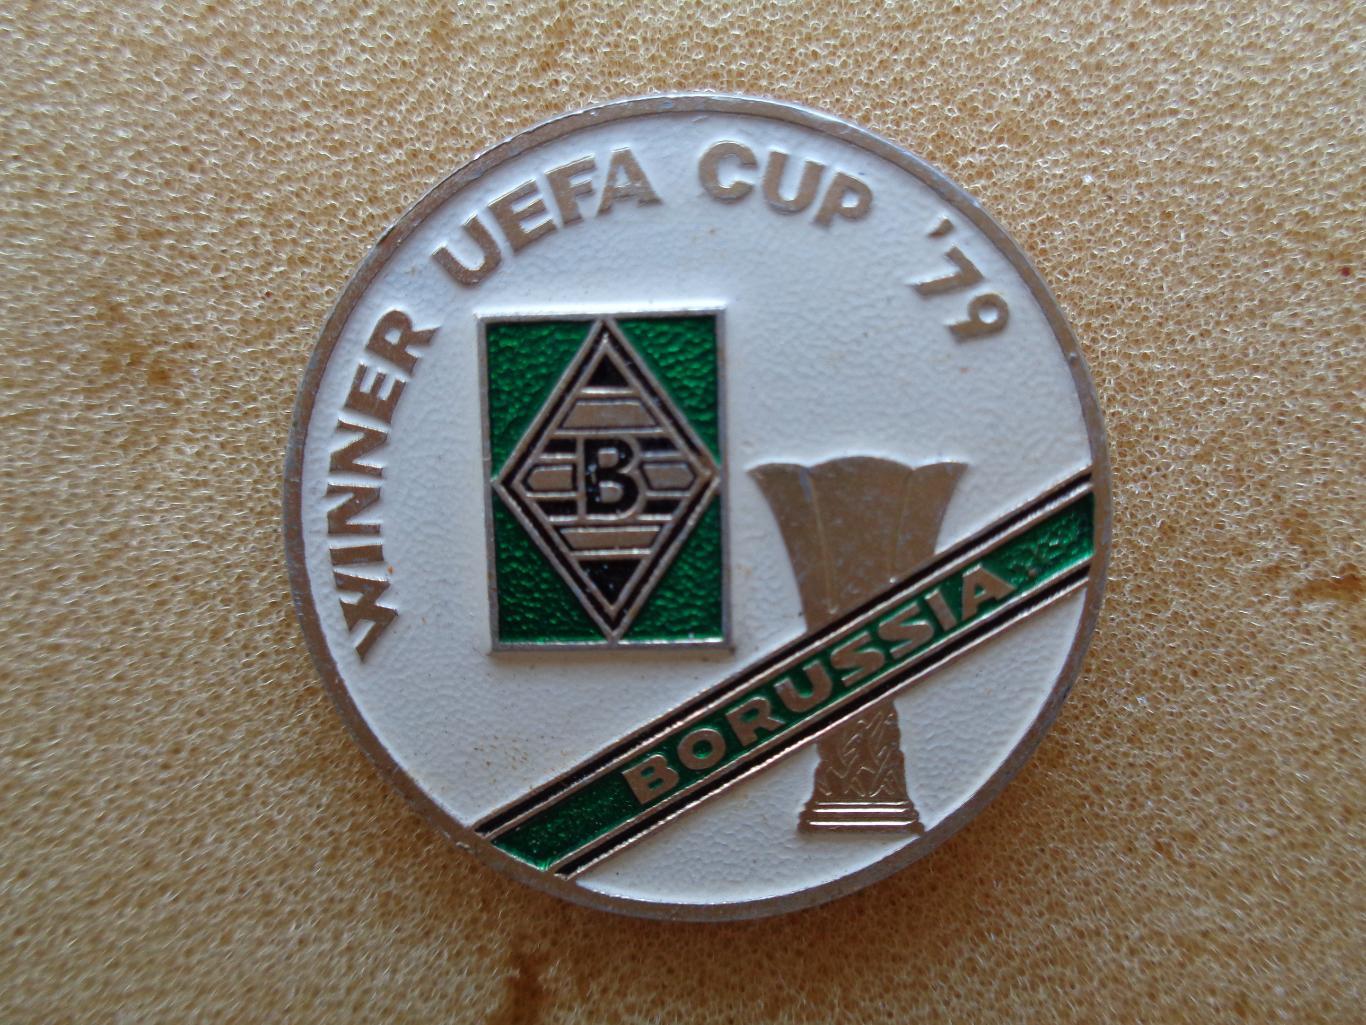 обладатель кубка УЕФА 1979 г. Боруссия